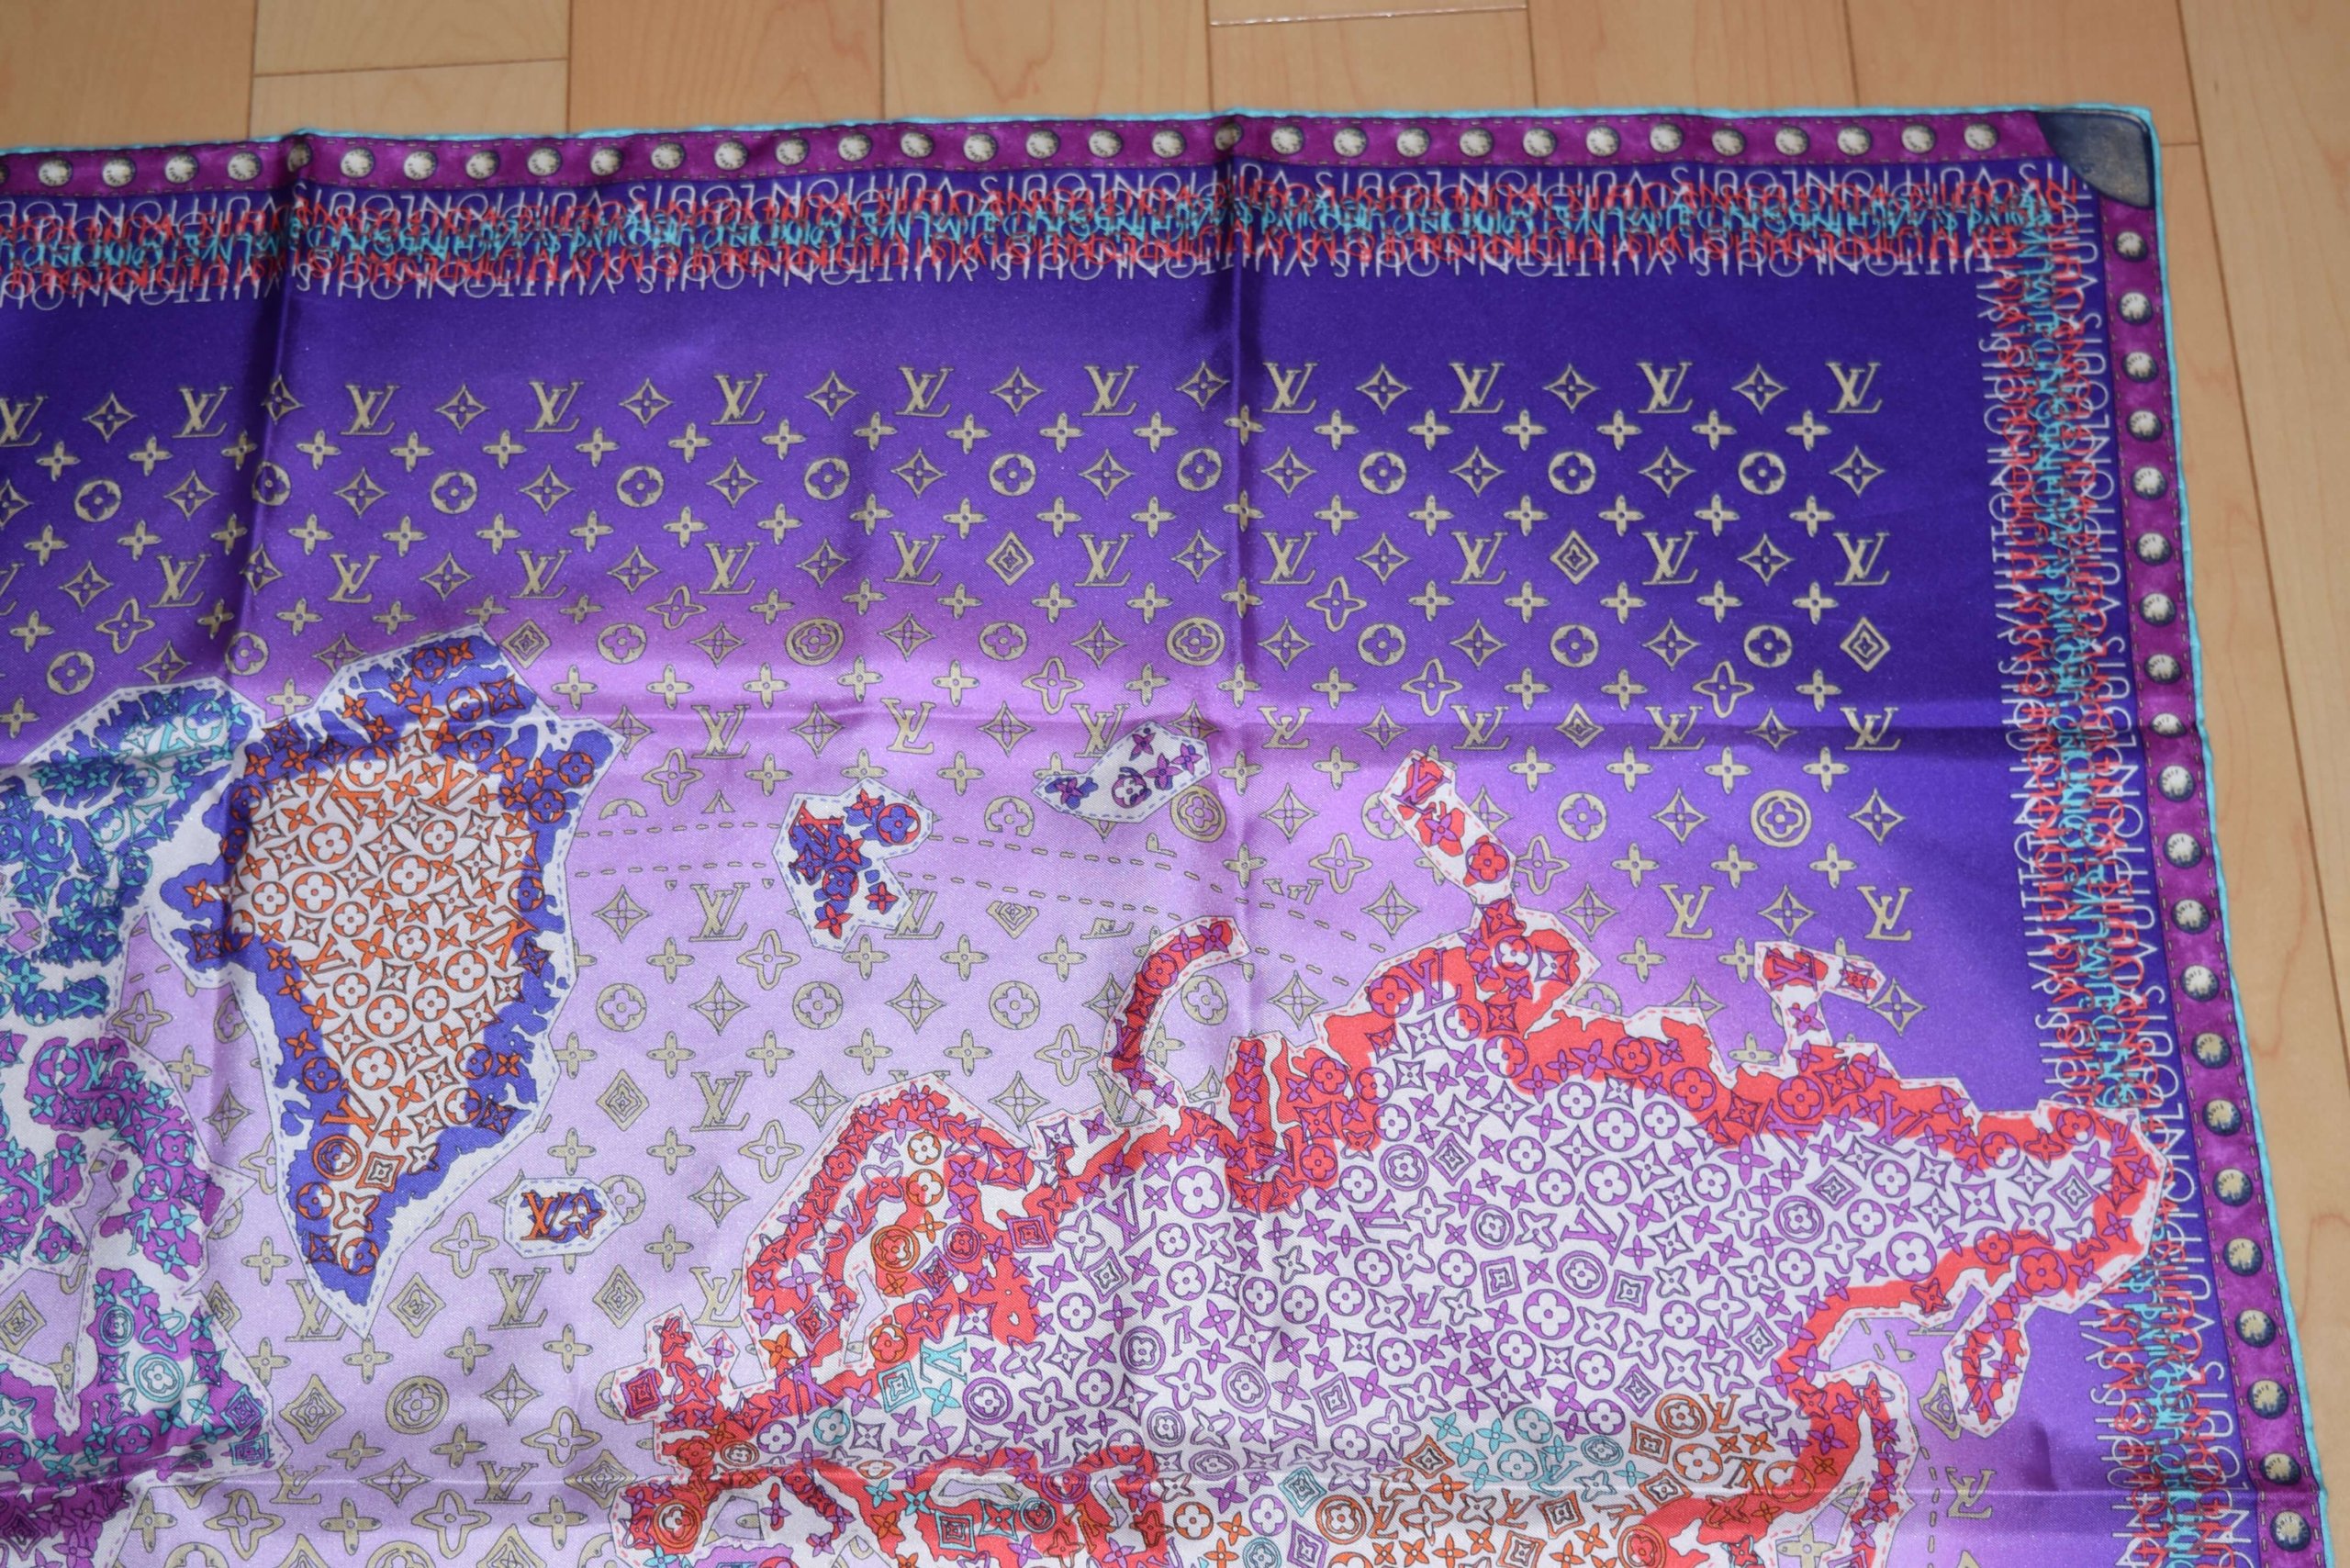 Louis Vuitton Scarf World map 86 cm Monogram Silk purple 34” inch